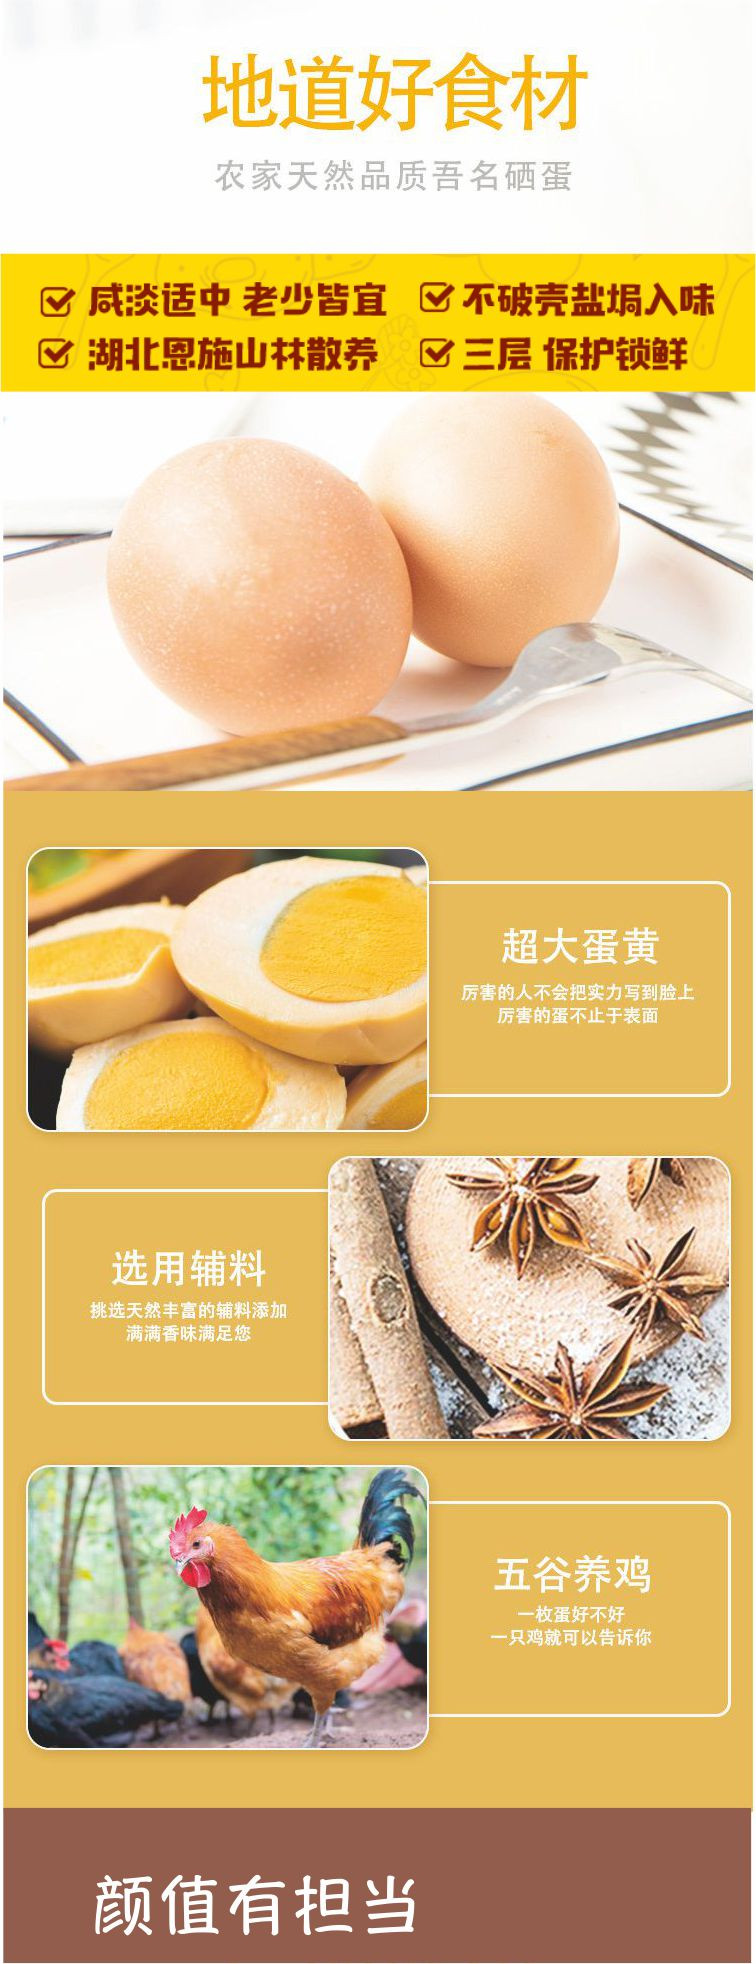 蛋蛋姥 盐焗烤鸡蛋活动专用链接 4只包邮